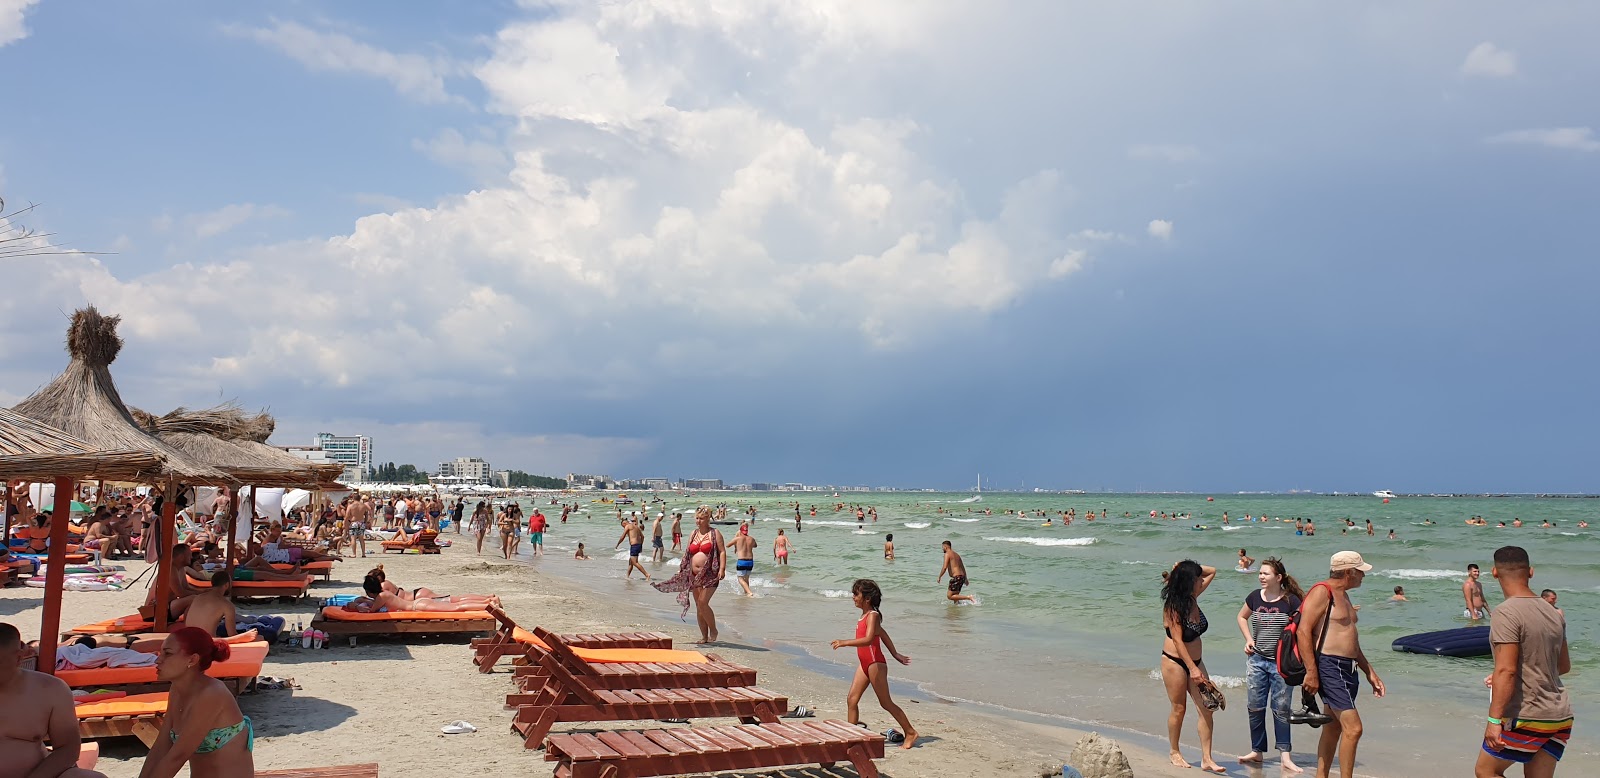 Relax beach Mamaia'in fotoğrafı - rahatlamayı sevenler arasında popüler bir yer